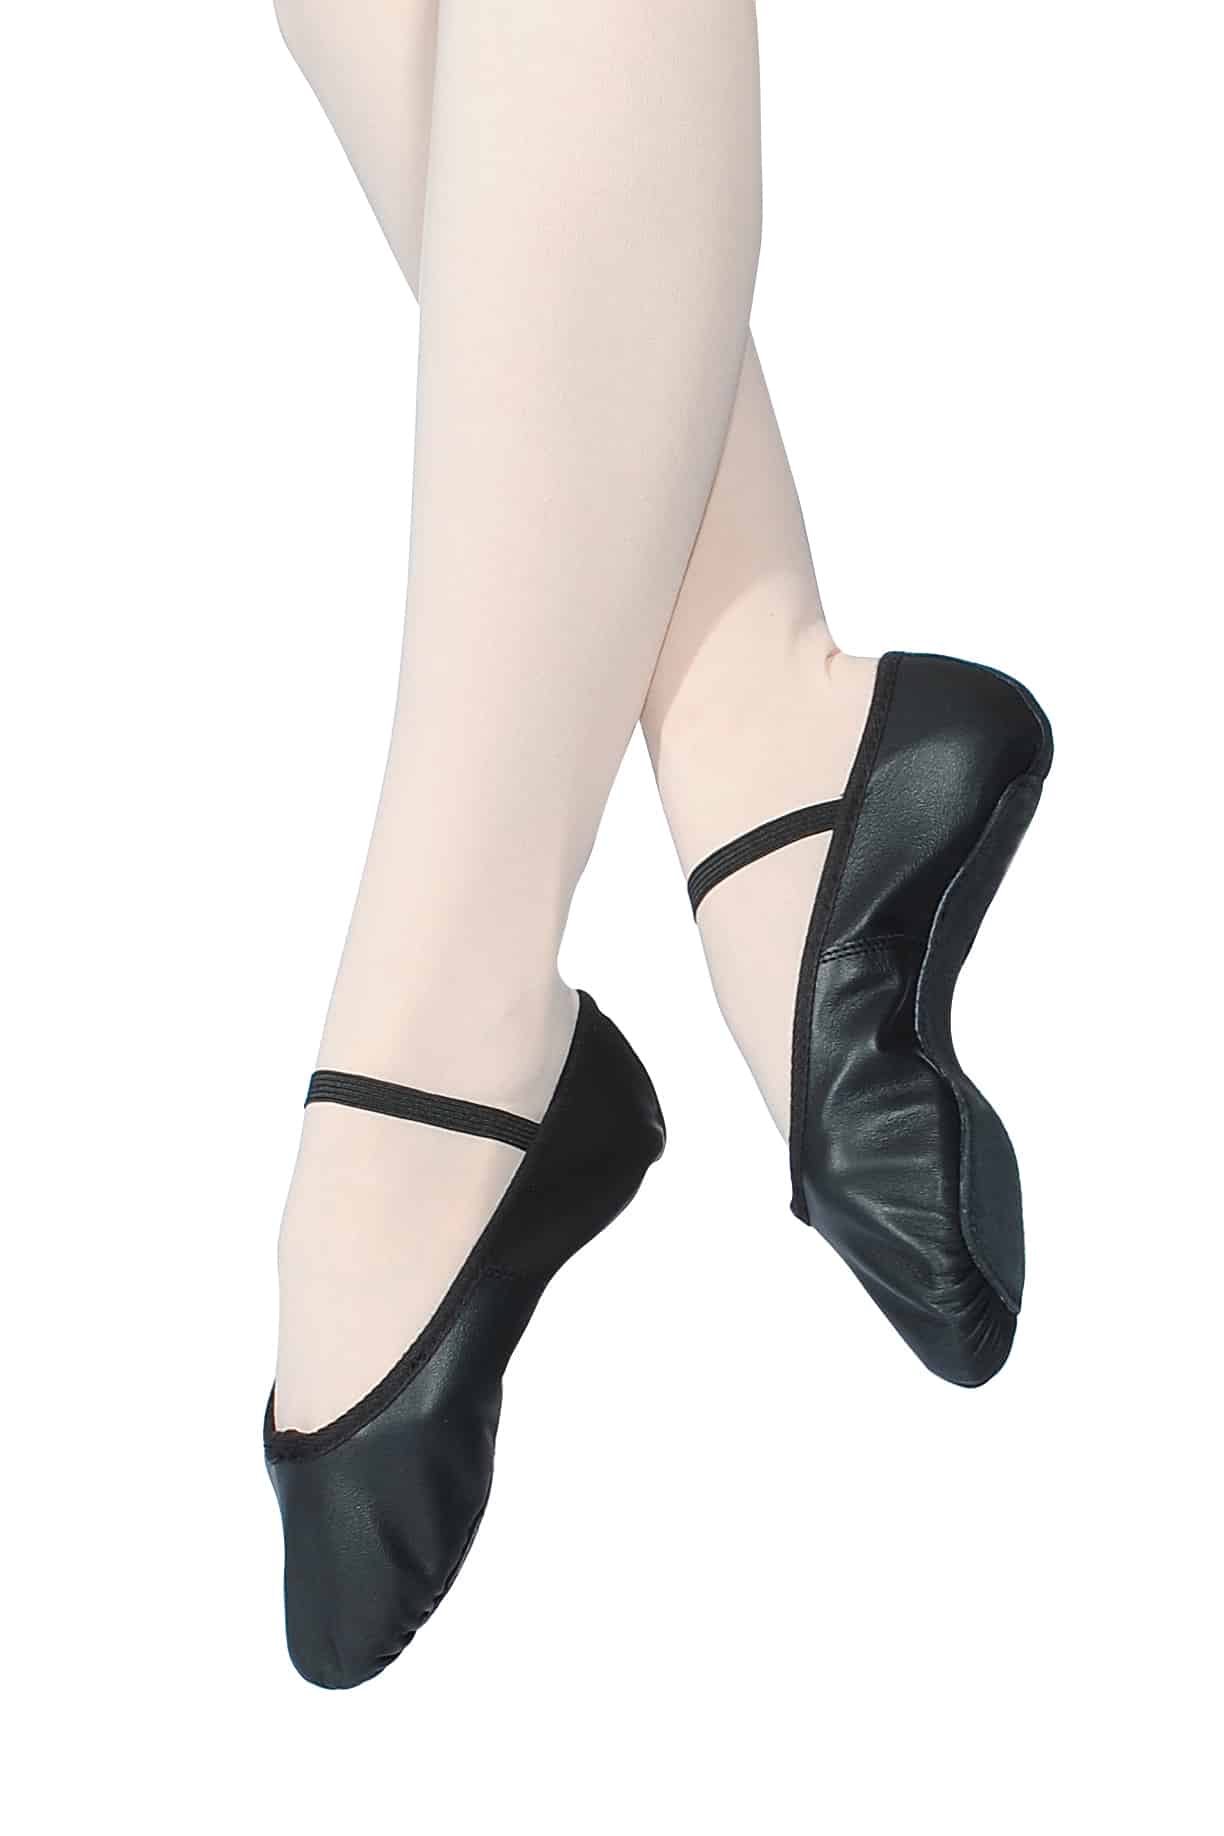 Roch Valley Standard Fit Black Leather Ballet Shoe - Scallywagz Schoolwear